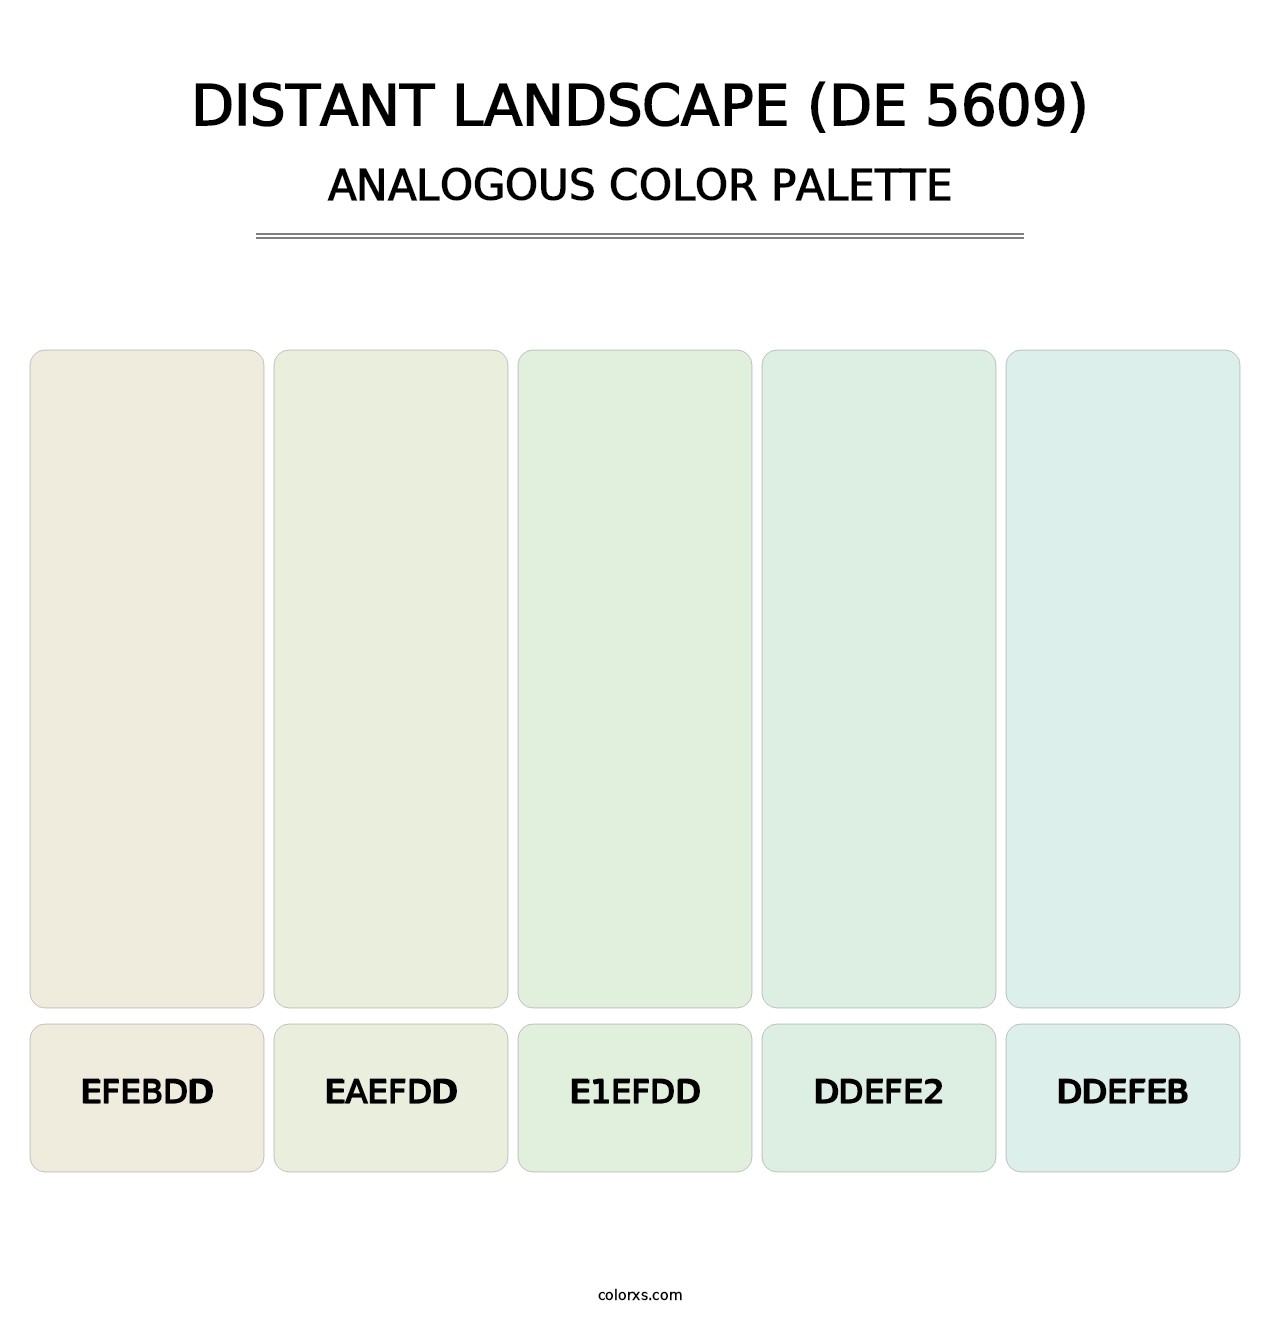 Distant Landscape (DE 5609) - Analogous Color Palette